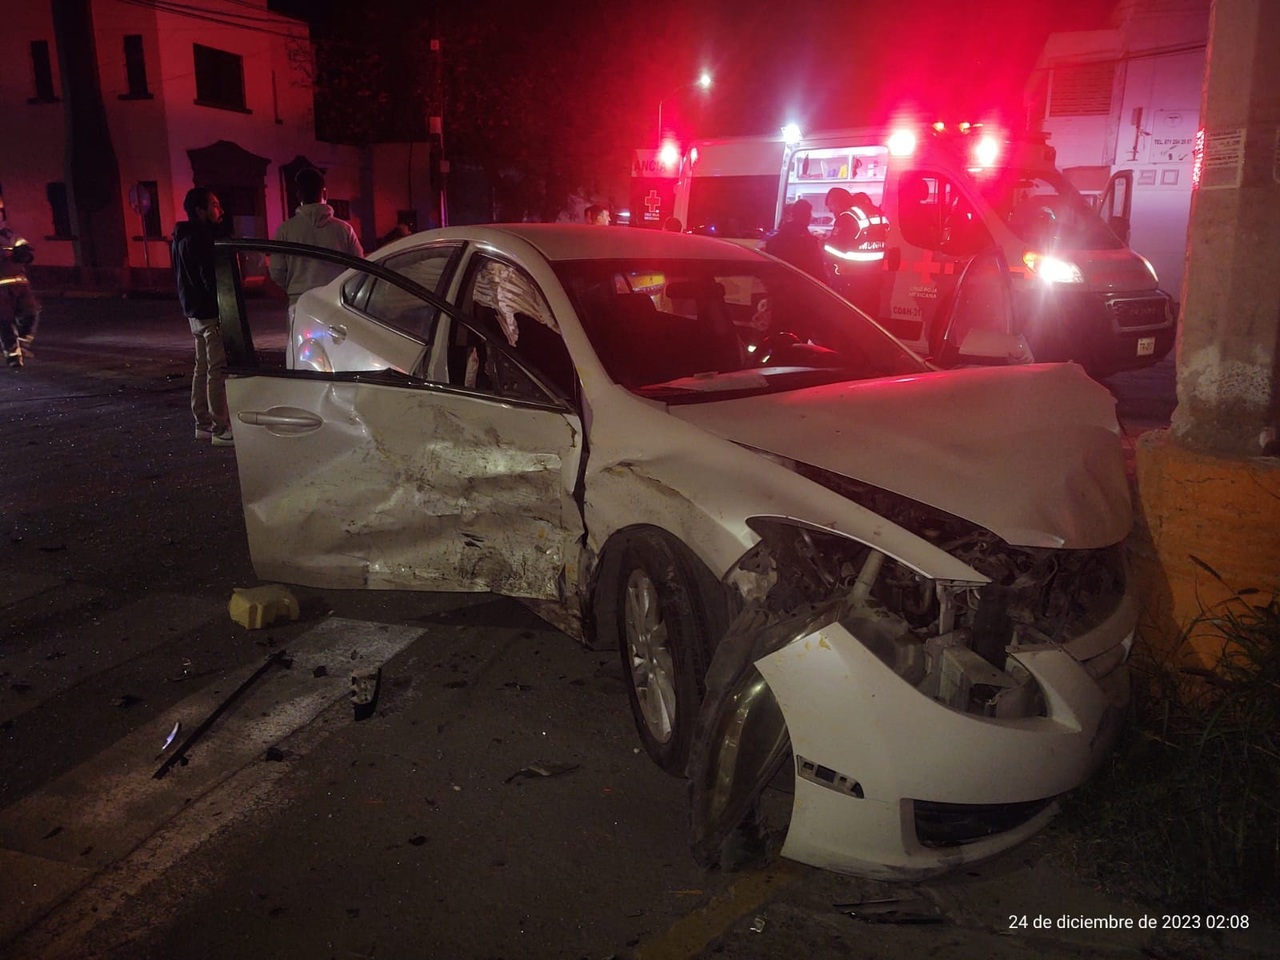 El accidente se registró alrededor de las 3:00 horas de la madrugada del domingo en la intersección de la avenida Francisco I. Madero y Abasolo, del Centro de Torreón. (EL SIGLO DE TORREÓN)